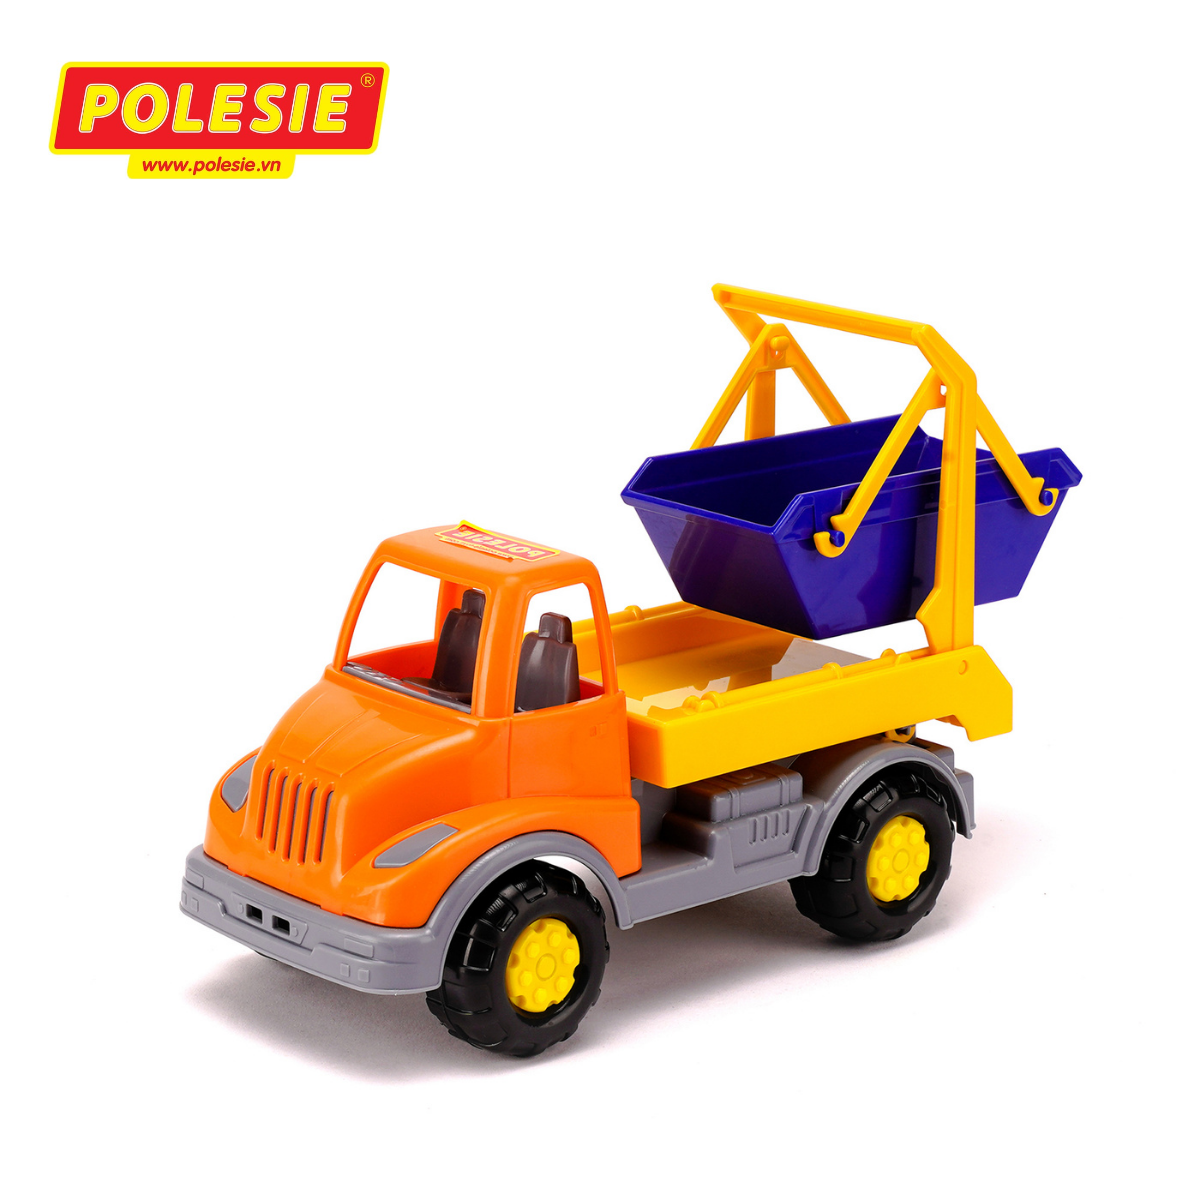 Đồ chơi xe tải môi trường Leon Polesie 52896 - Hàng chính hãng nhập khẩu châu âu